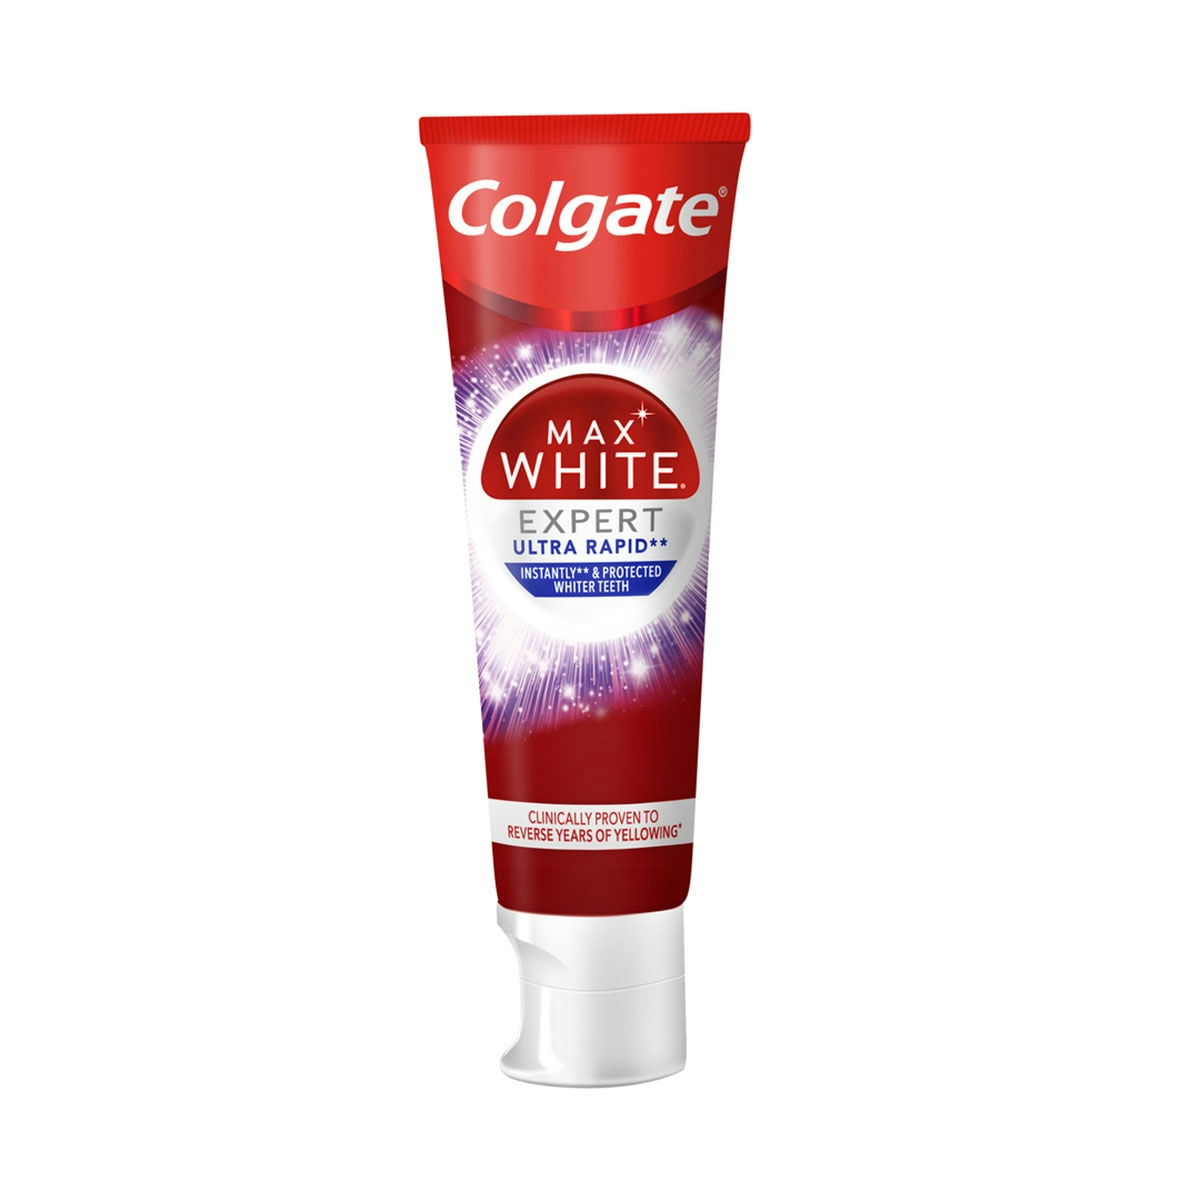 Pasta de dientes blanqueadora Colgate Max White Expert Ultra Rapid 75 ml